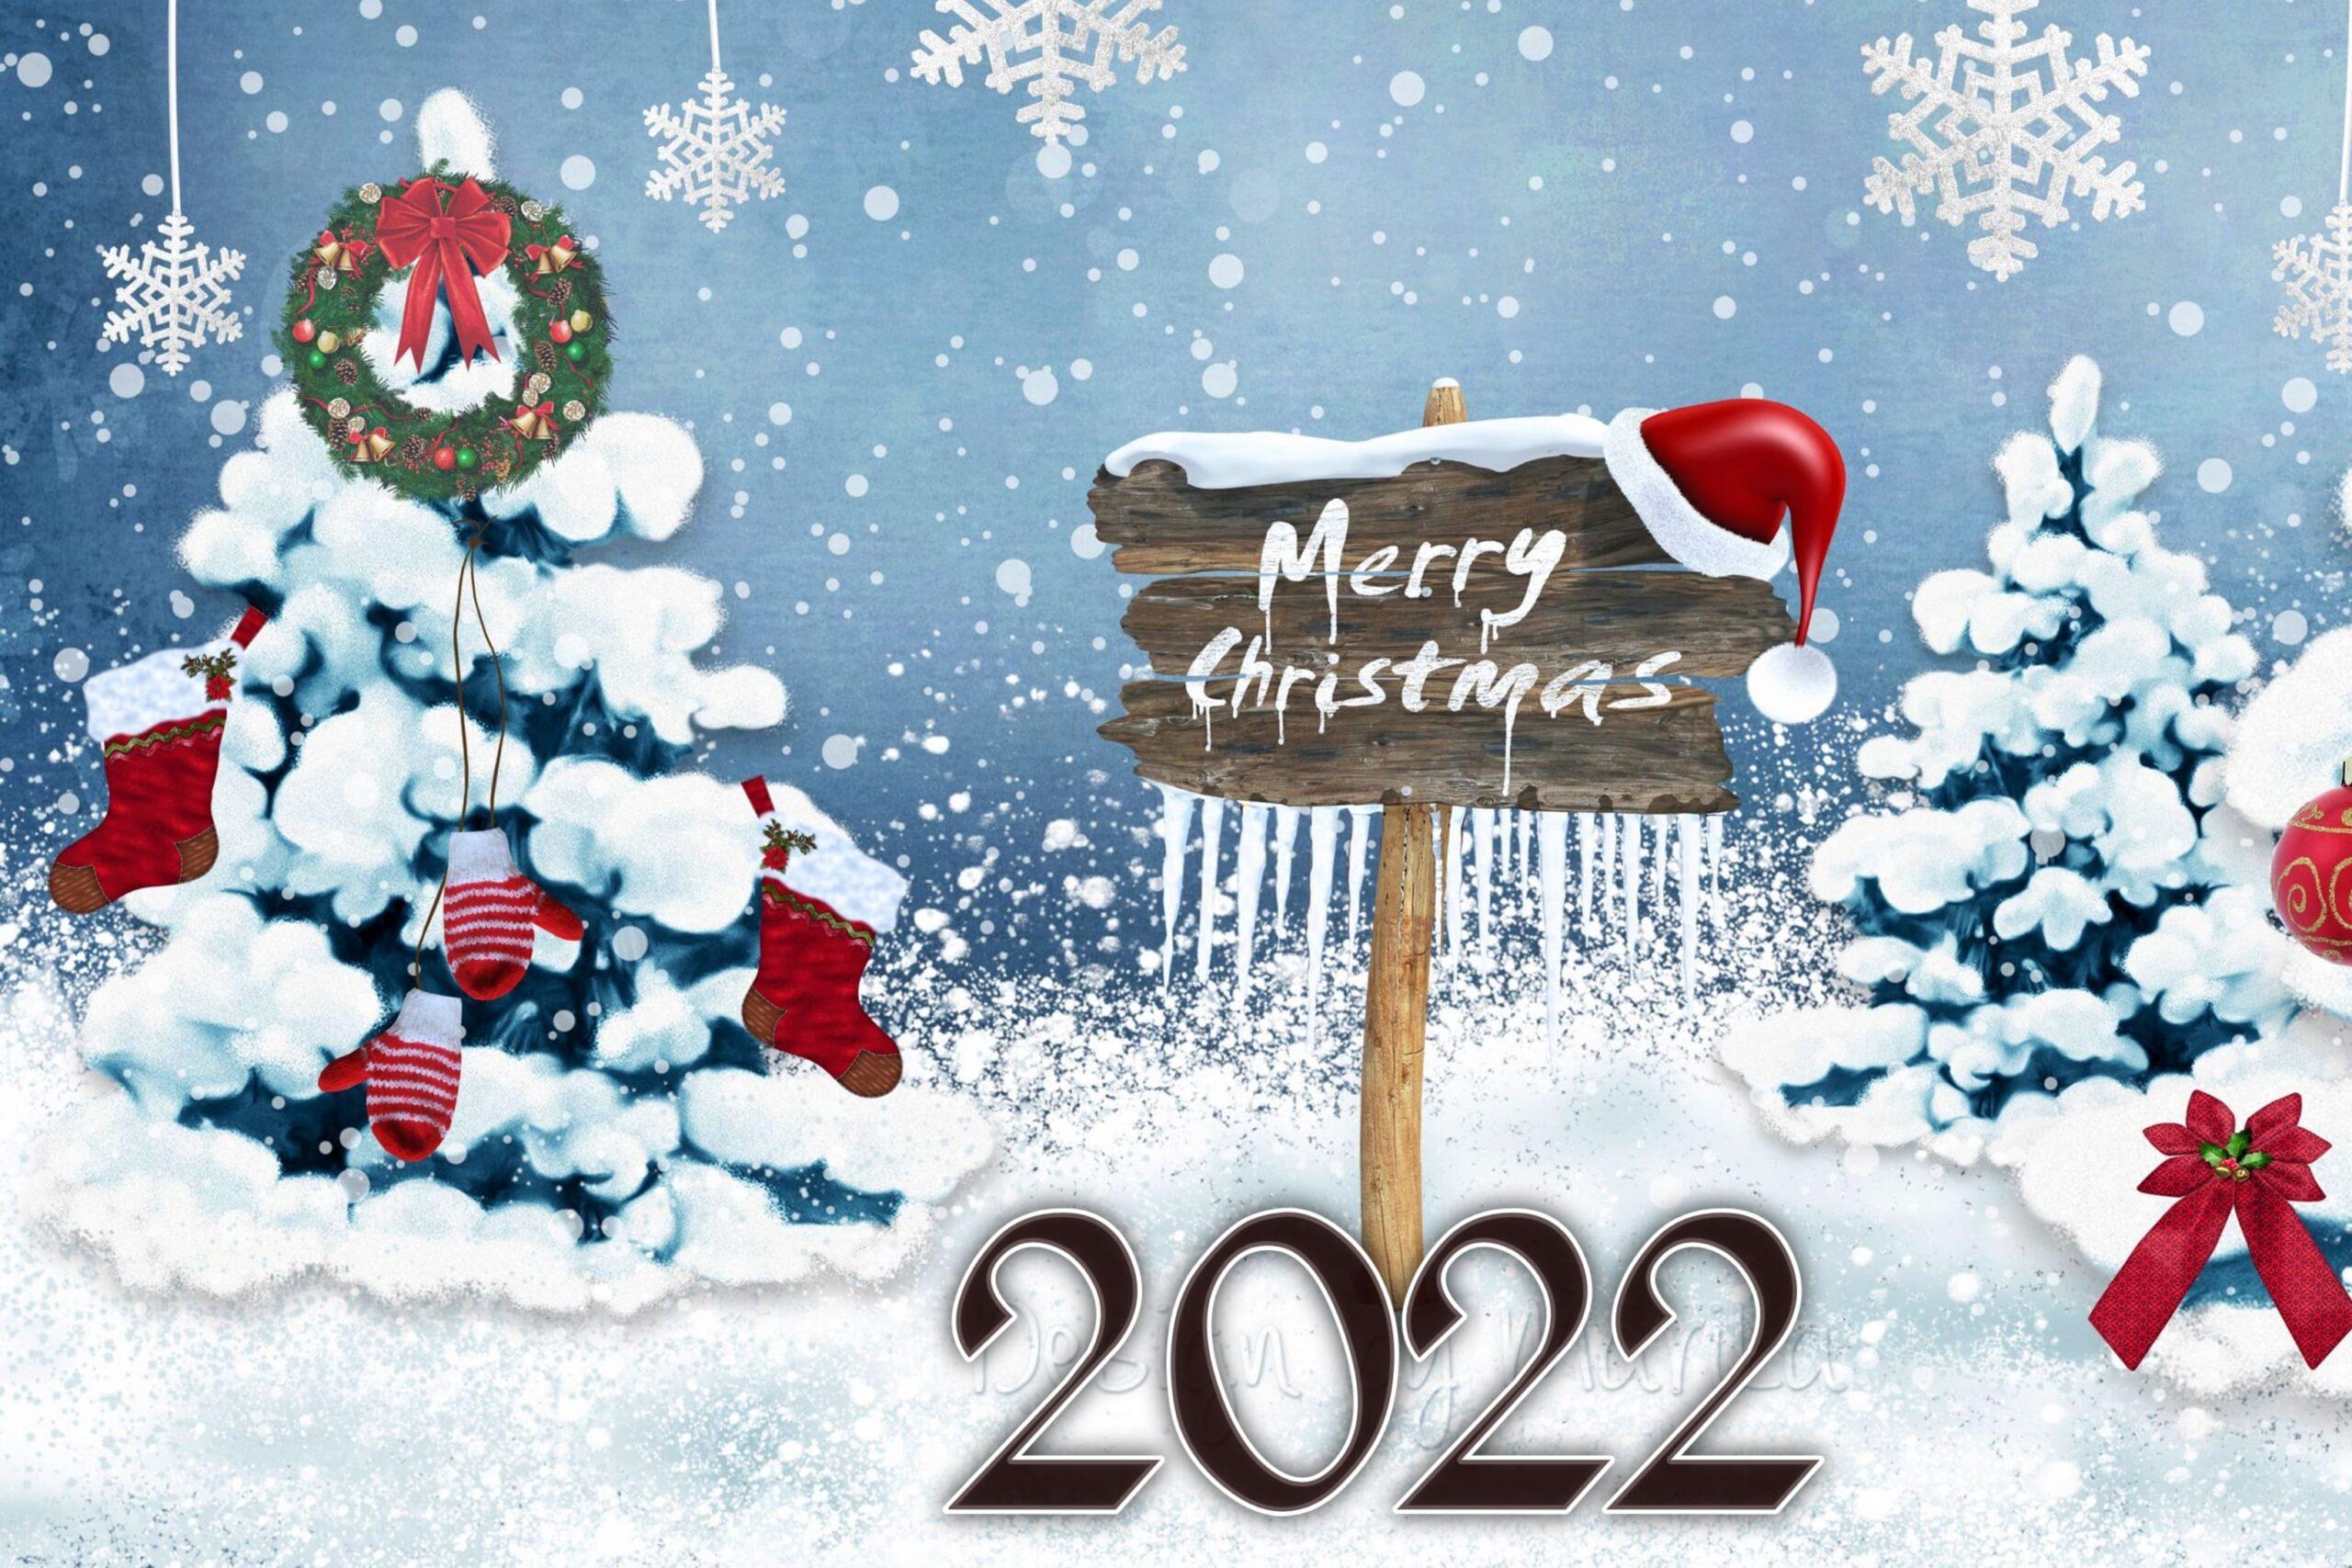 Chào mừng đón năm mới 2022 với các hình nền Giáng sinh tuyệt đẹp! Mỗi hình nền sẽ mang lại cảm giác am mê và ấm áp cho ngày lễ của bạn. Tận hưởng không khí Giáng sinh đầy thú vị và xem ngay hình nền Giáng sinh 2022 này!